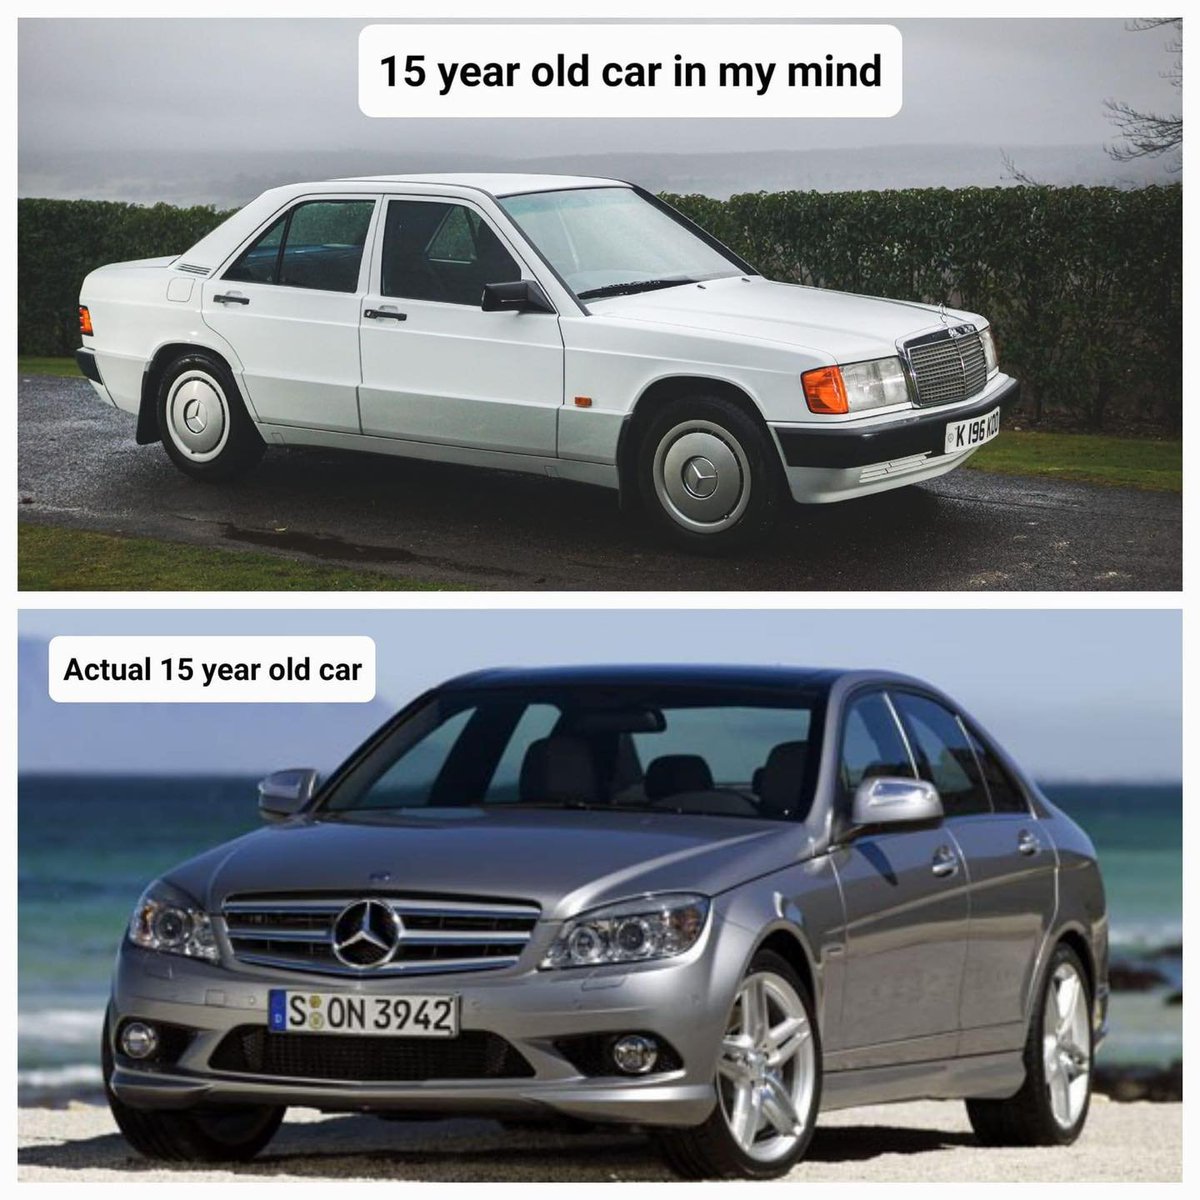 Na igen... Neked melyik az az autó, ami úgy él az emlékezetedben, h de hát most jelent meg, közben meg már lazán youngtimer?